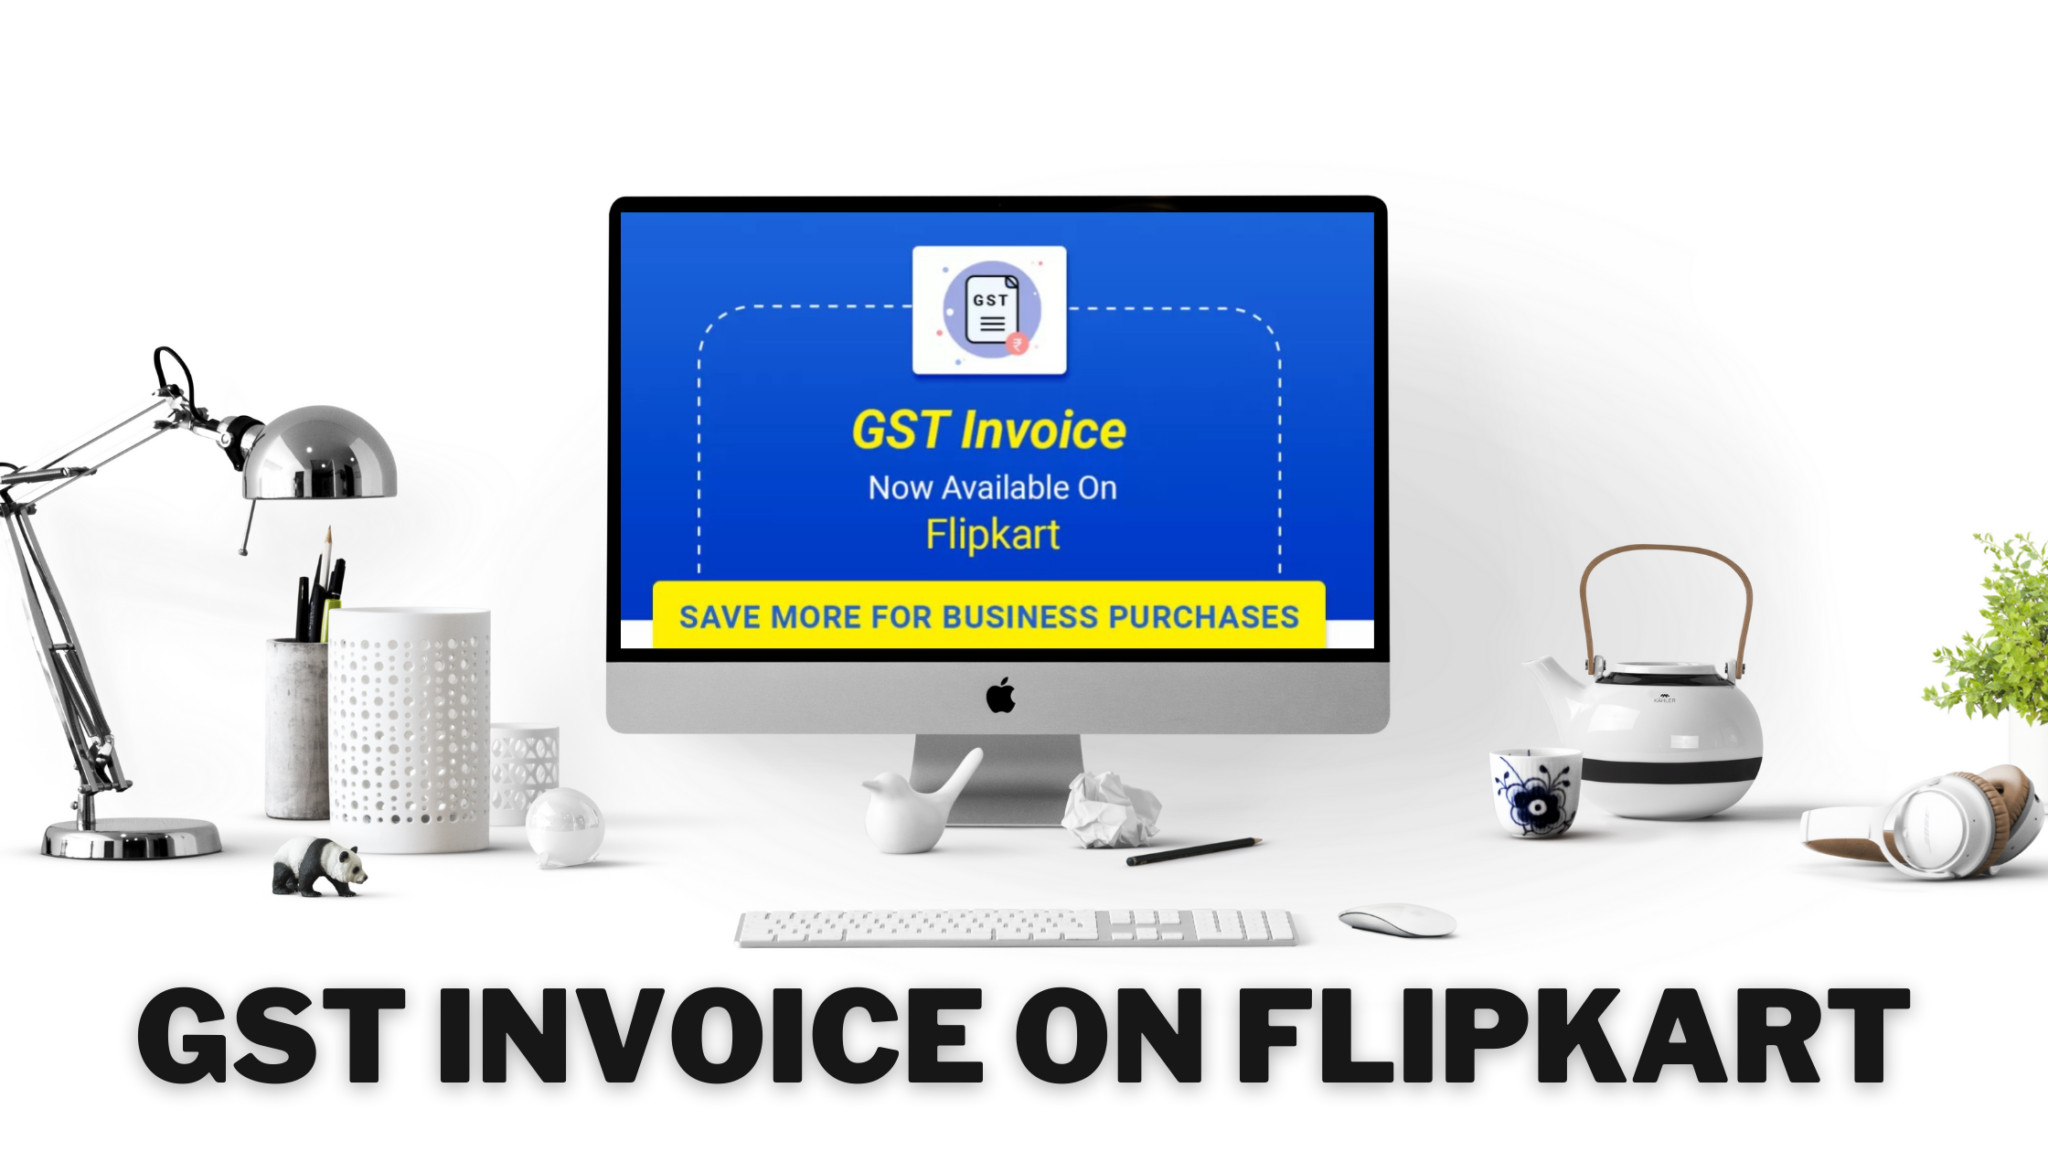 Flipkart GST Invoice